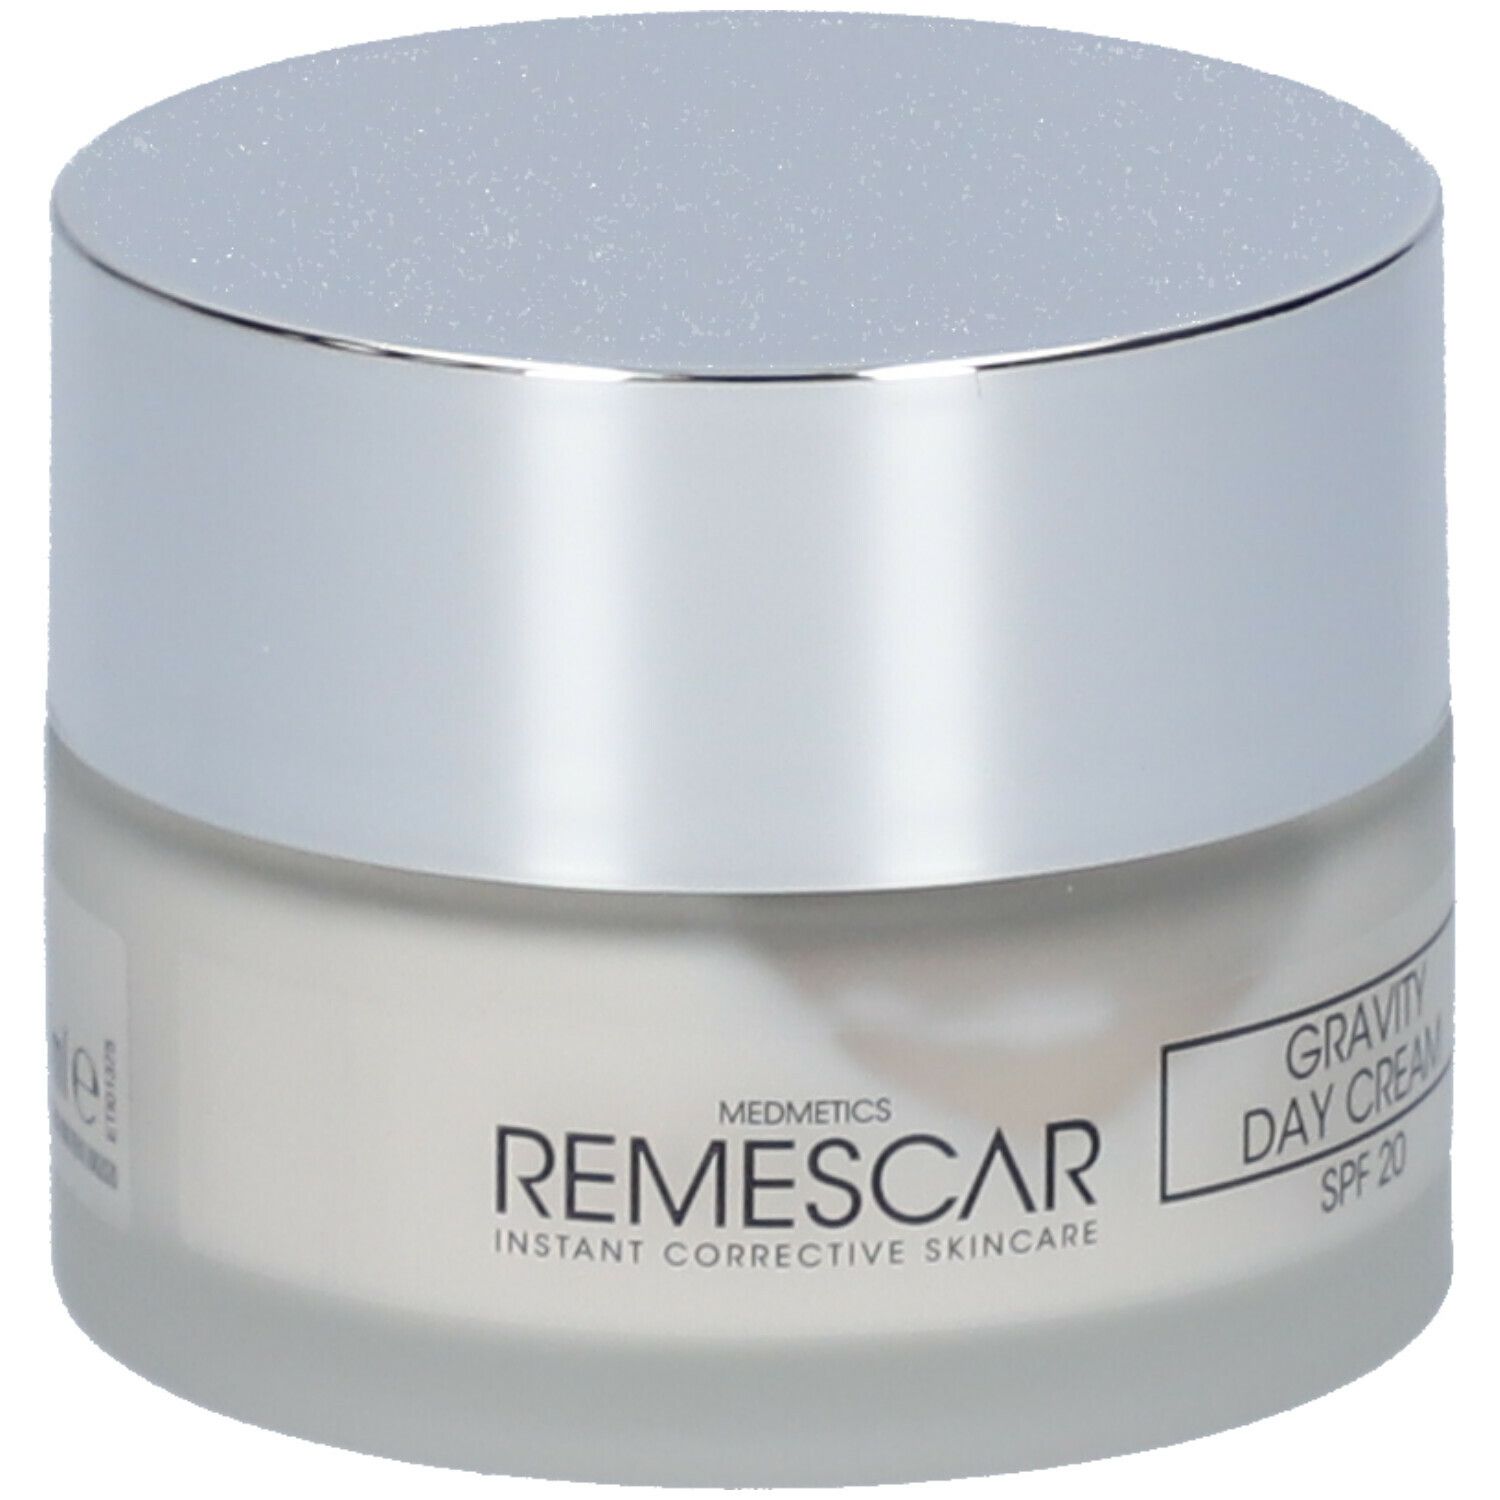 Remescar Gravity Day Cream Spf20